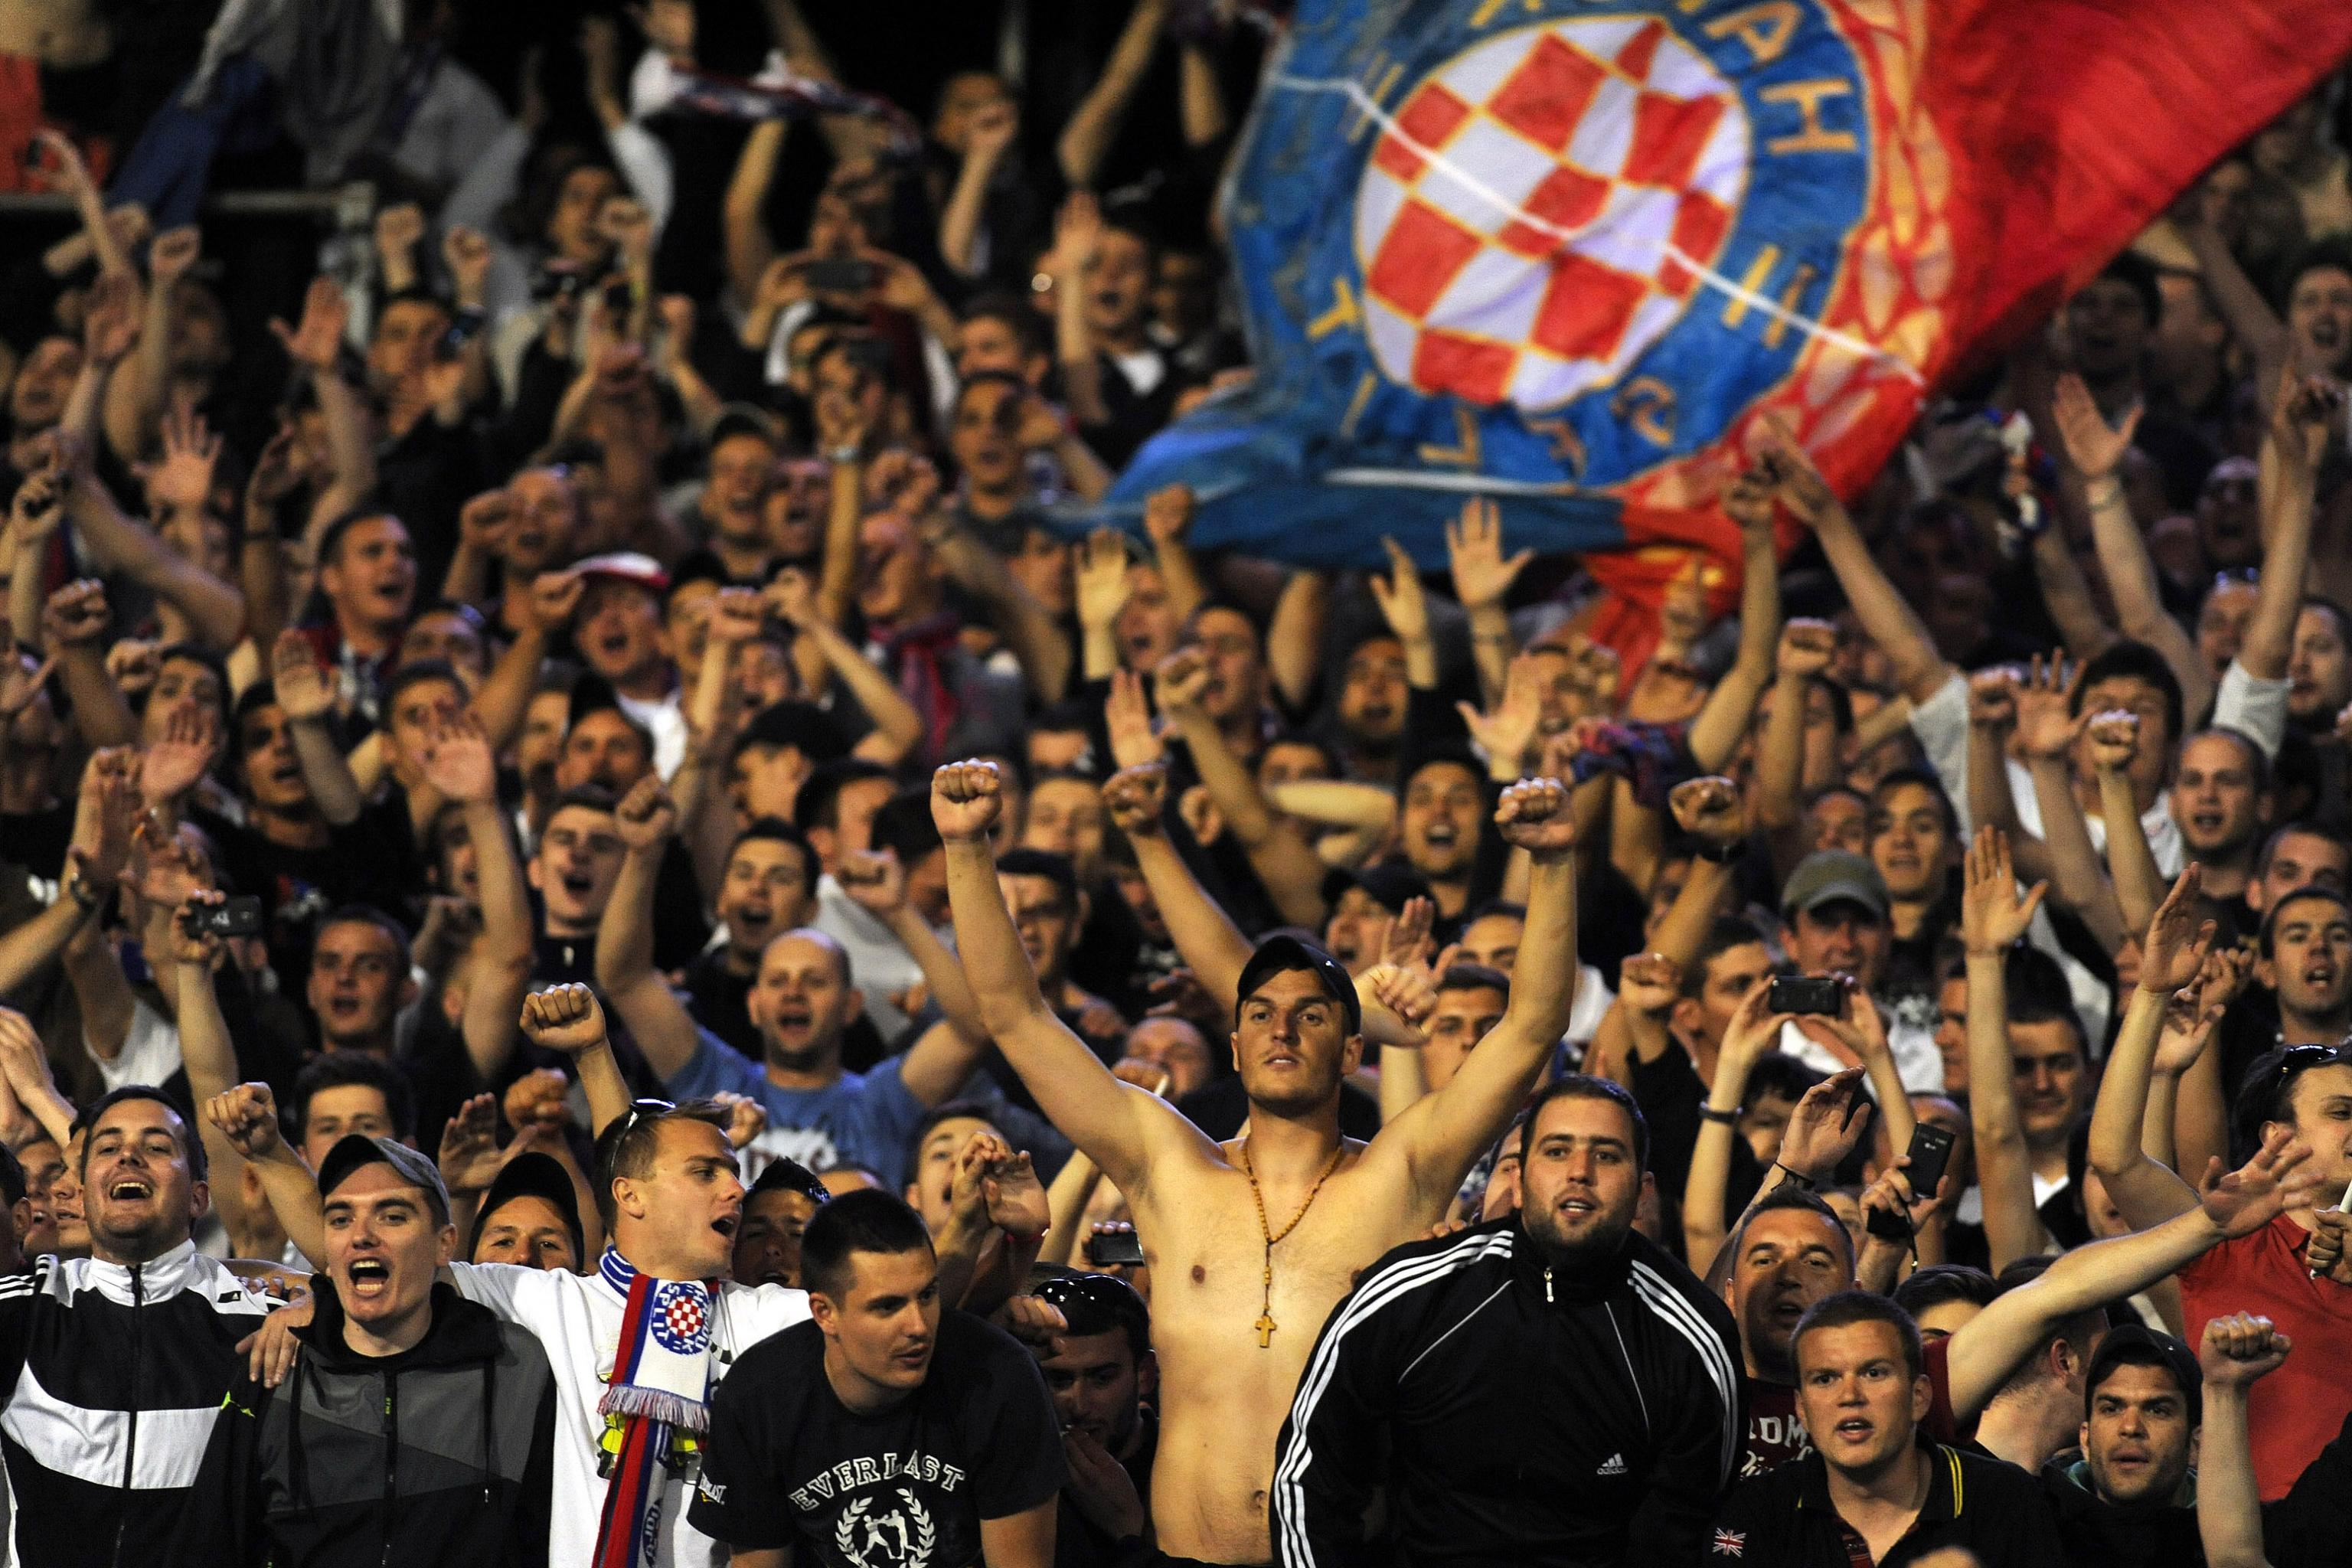 Hajduk Photos and Images